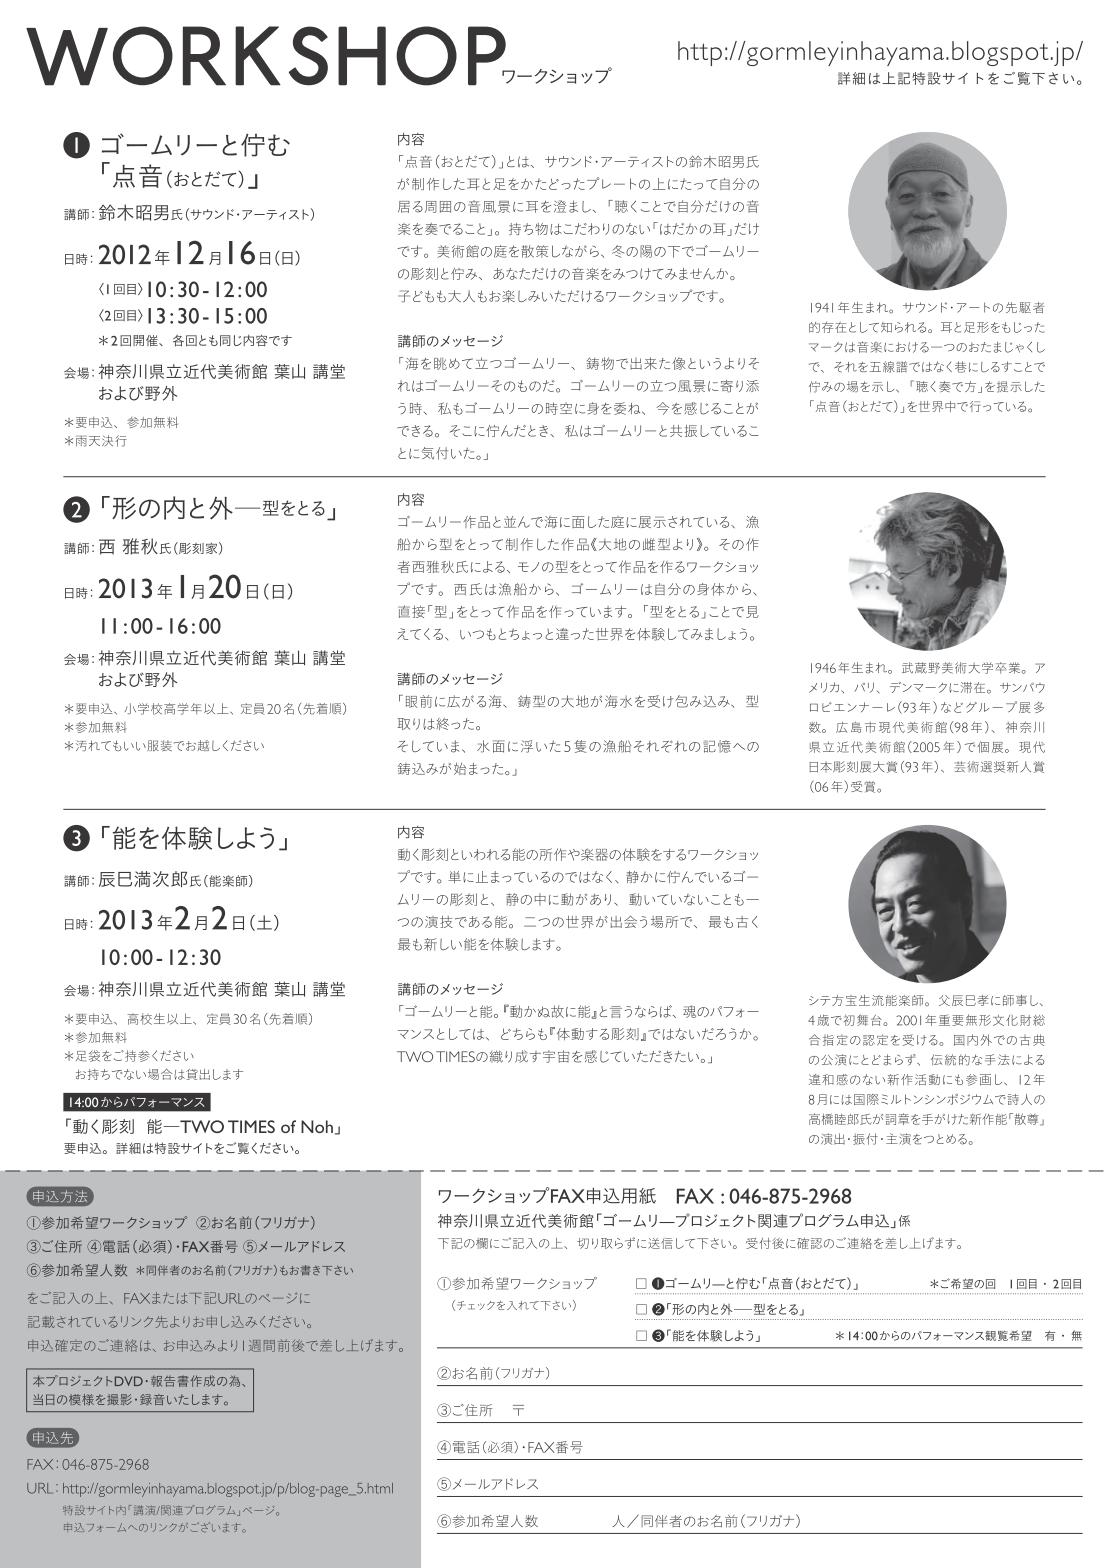 http://manjiro-nohgaku.com/news/fly.jpg